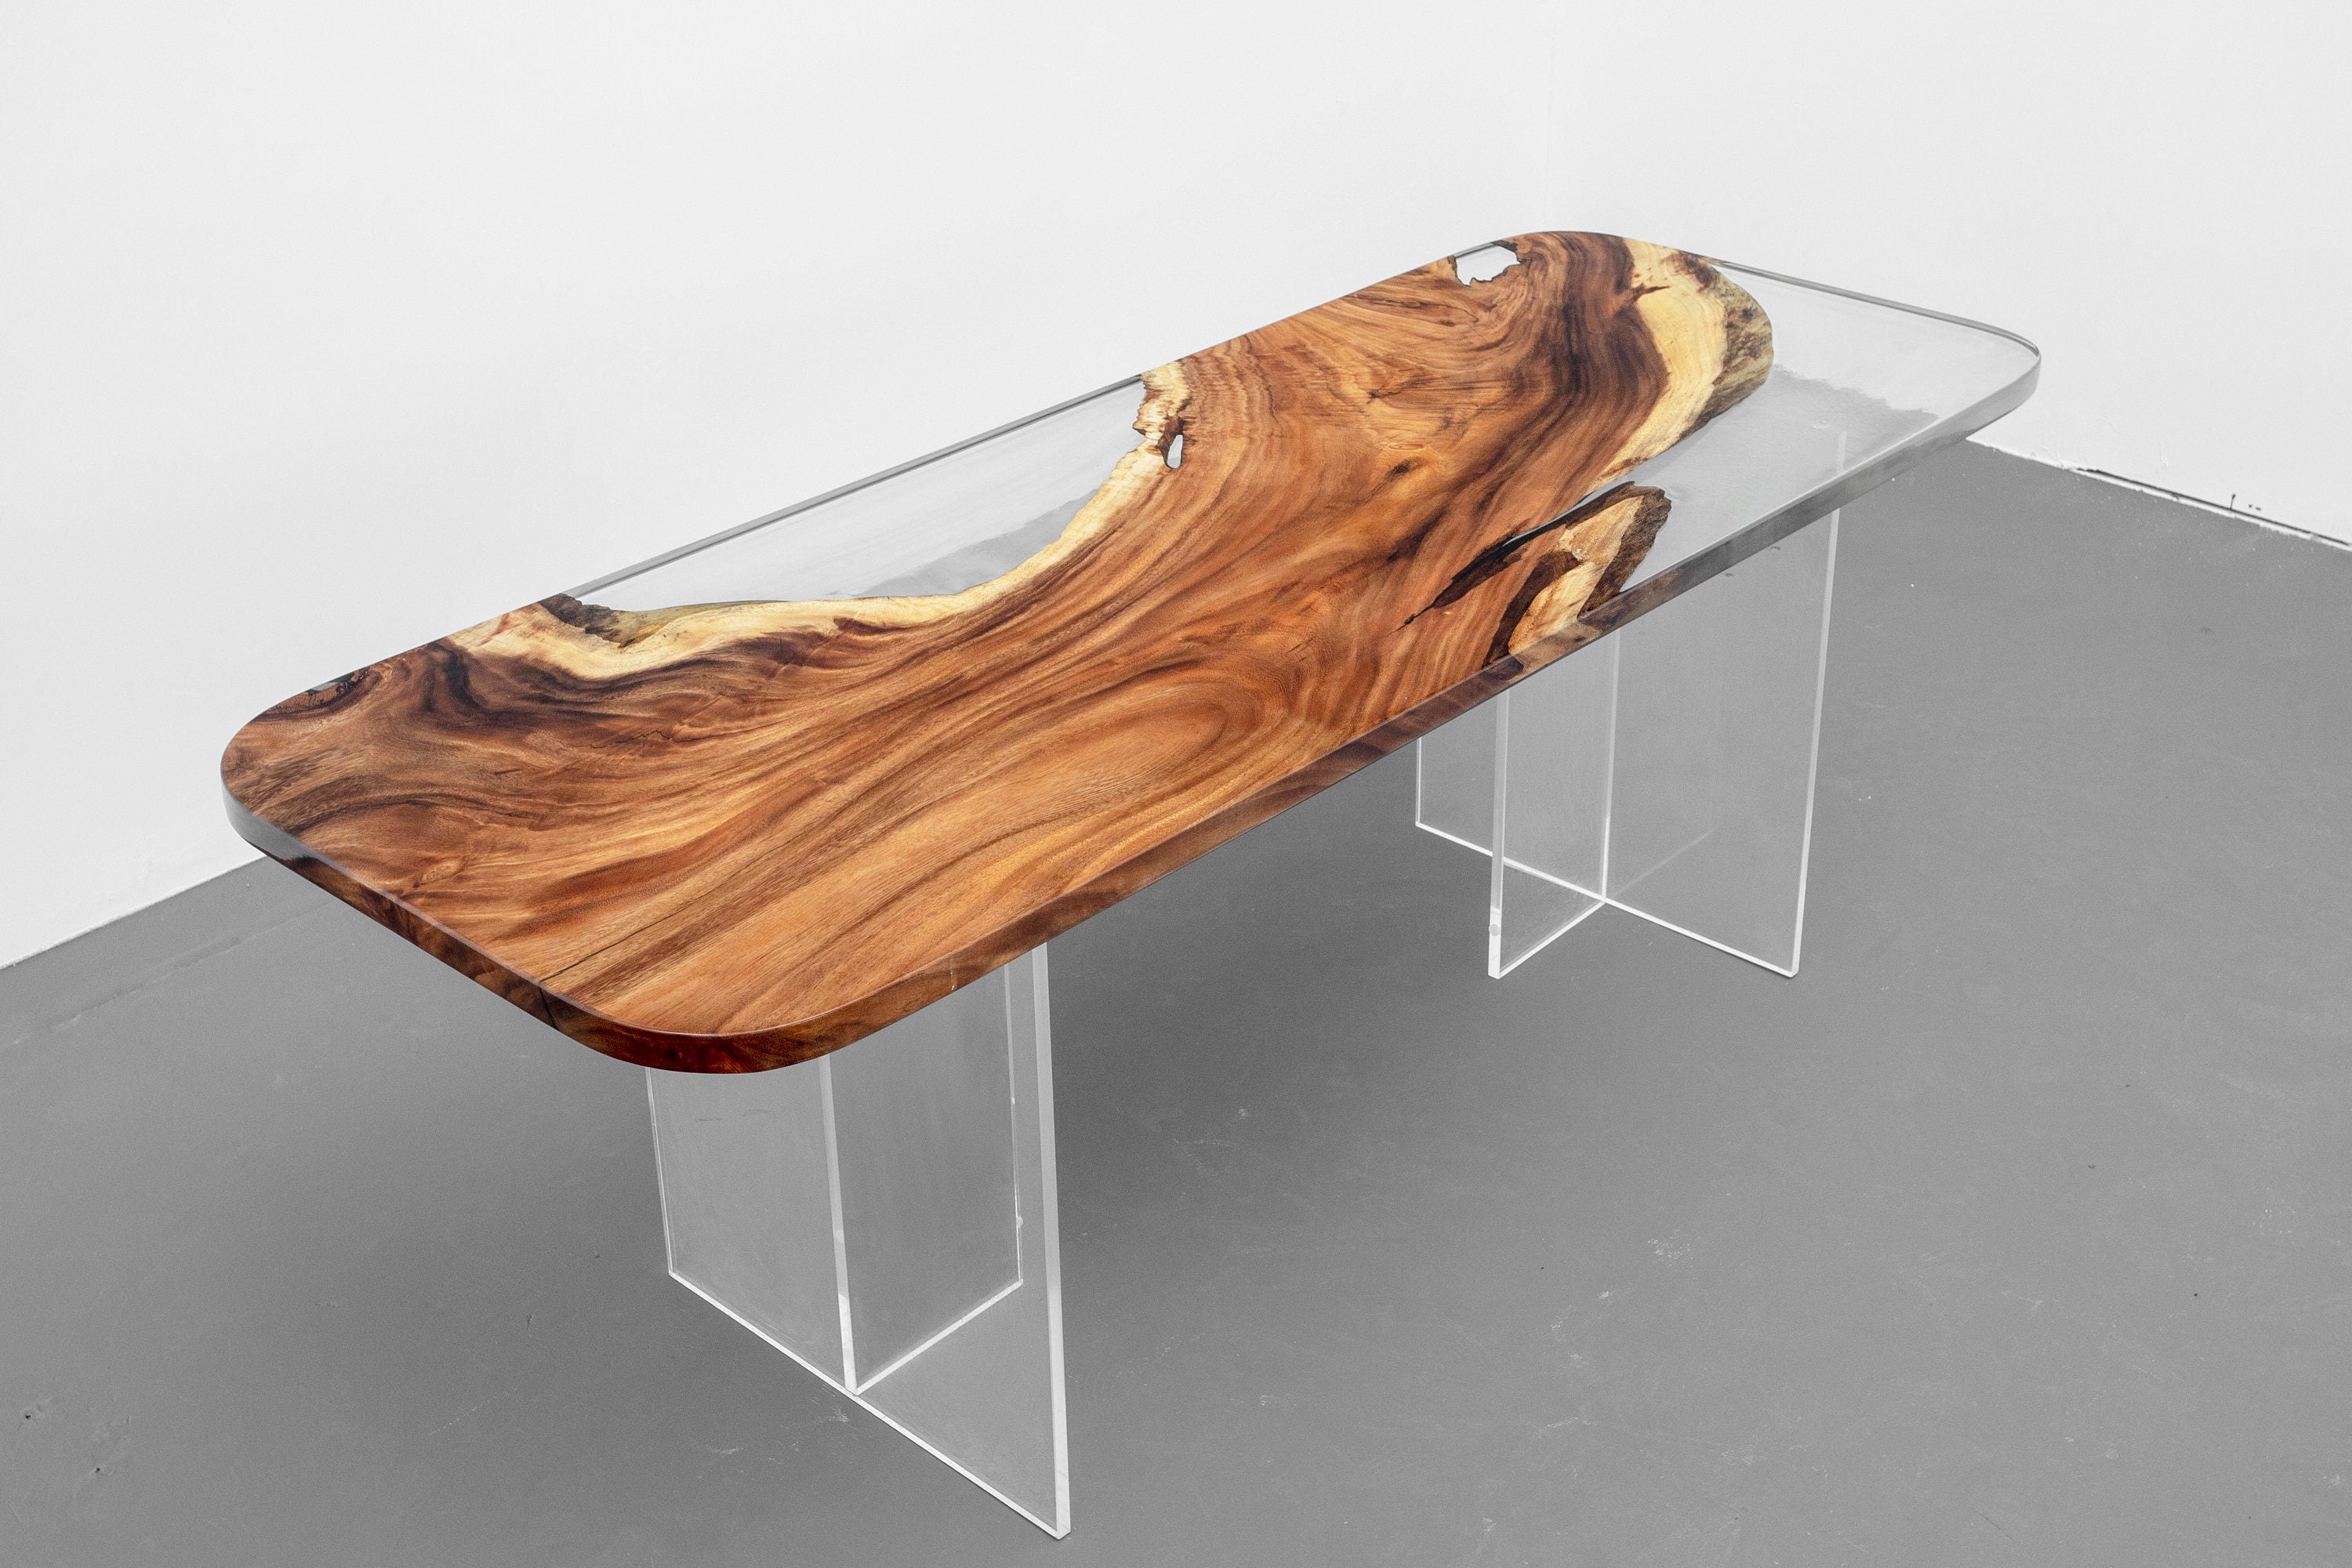 Forma speciale in legno per la selezione, tavolo fatto a mano, tavolo da pranzo epossidico in noce con bordo vivo